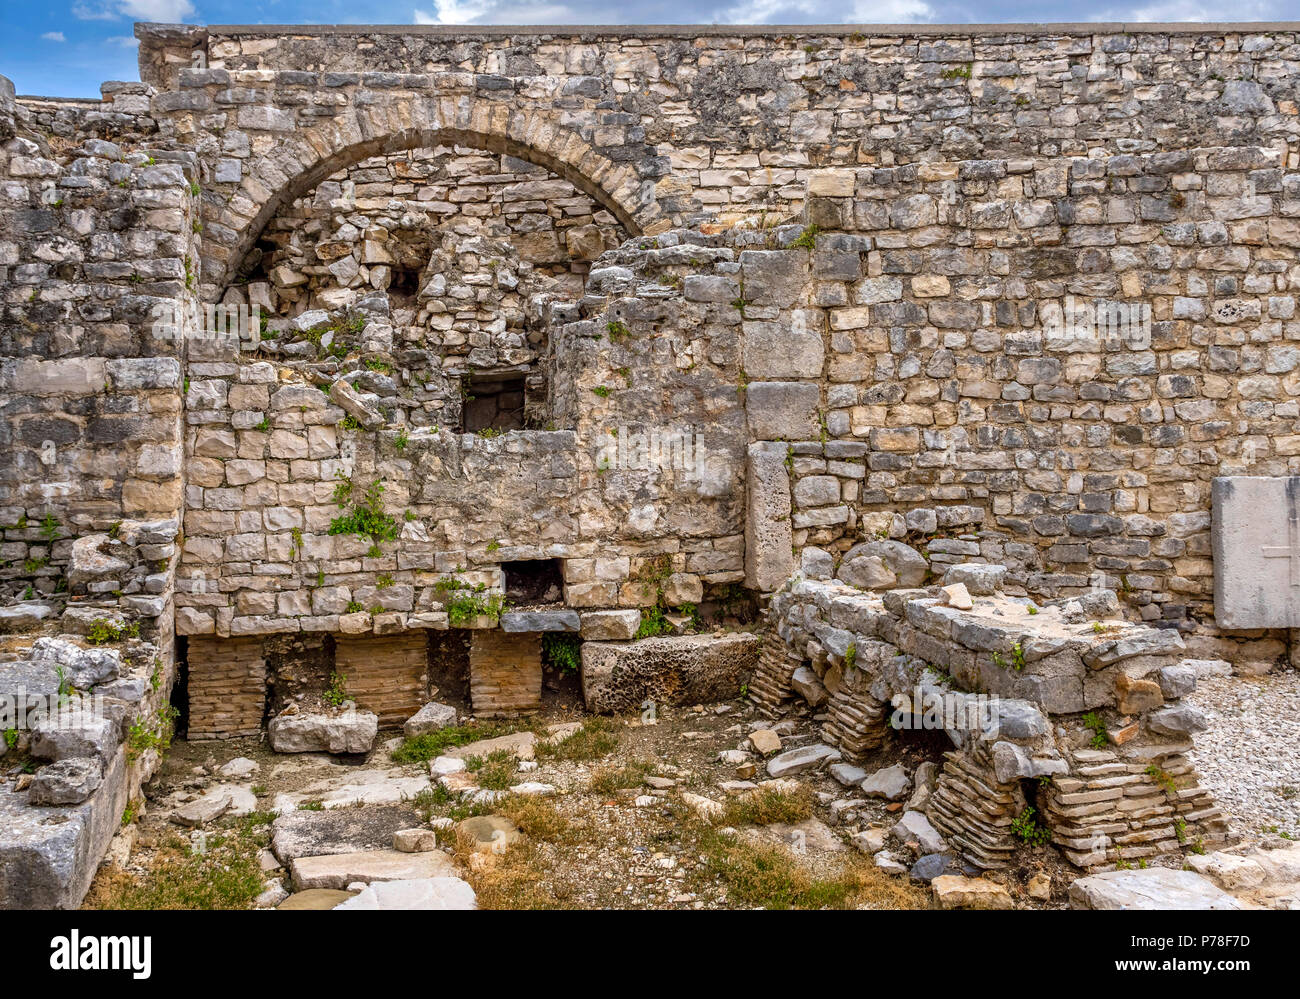 Euphrasian Basilica, UNESCO World Heritage, Porec, Istria, Croatia, Europe Stock Photo